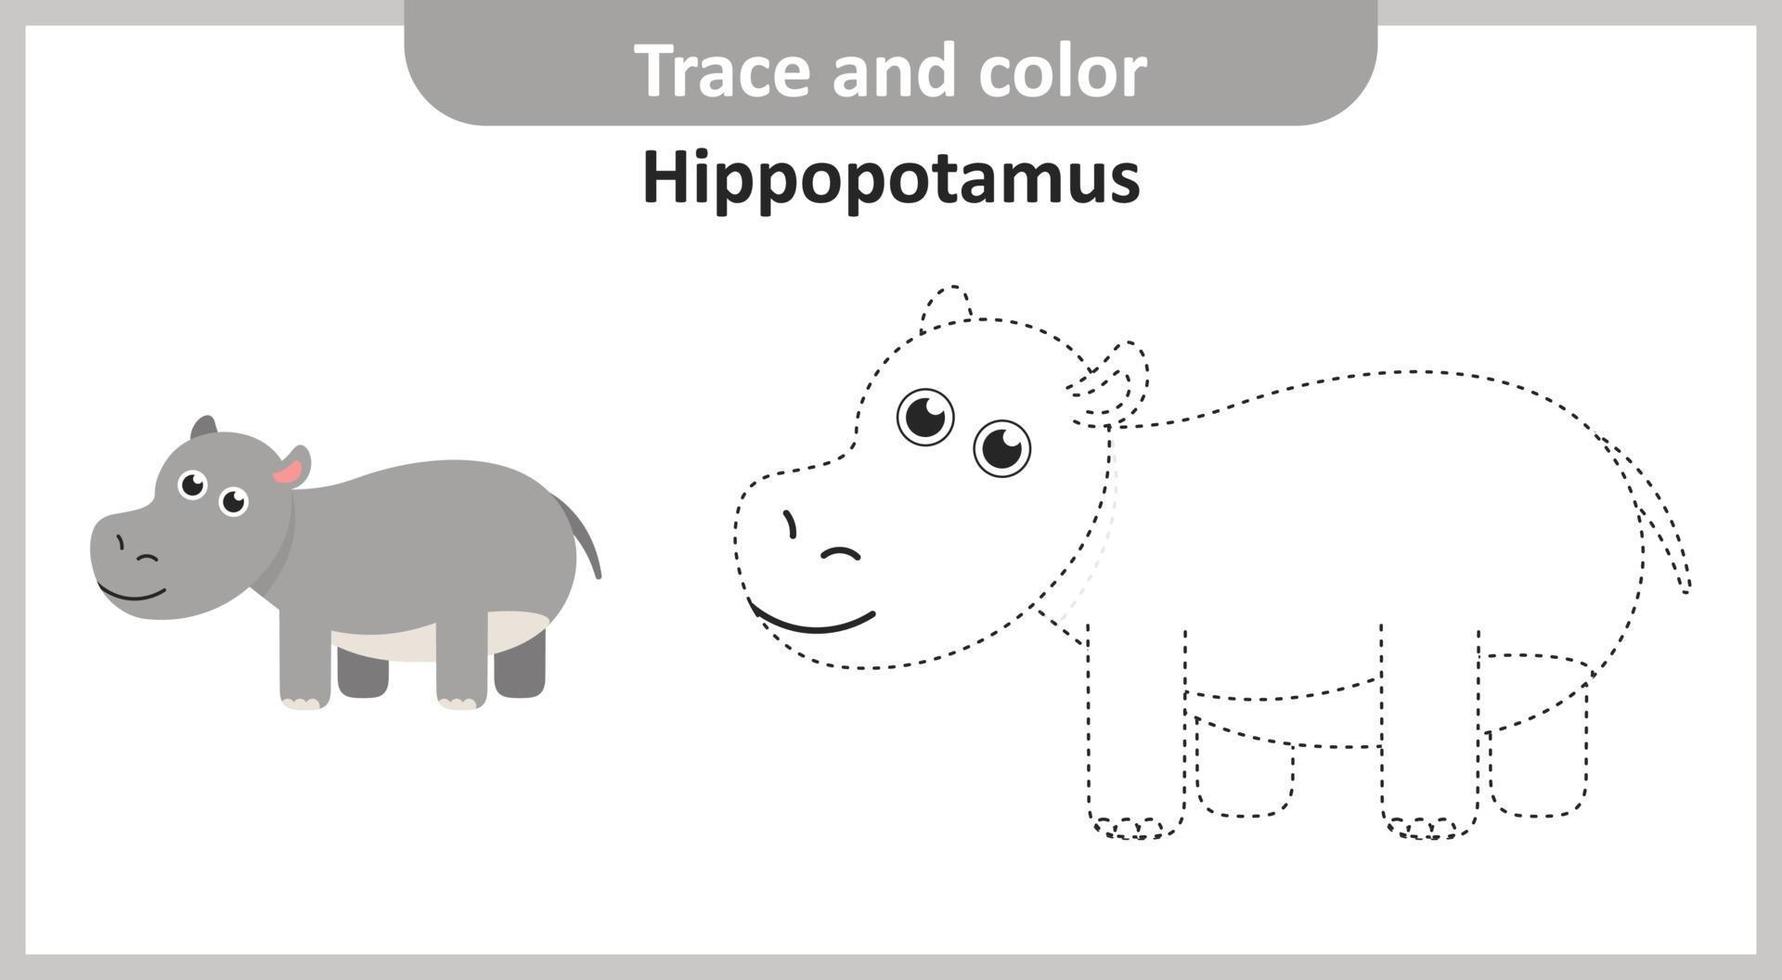 traço e hipopótamo colorido vetor